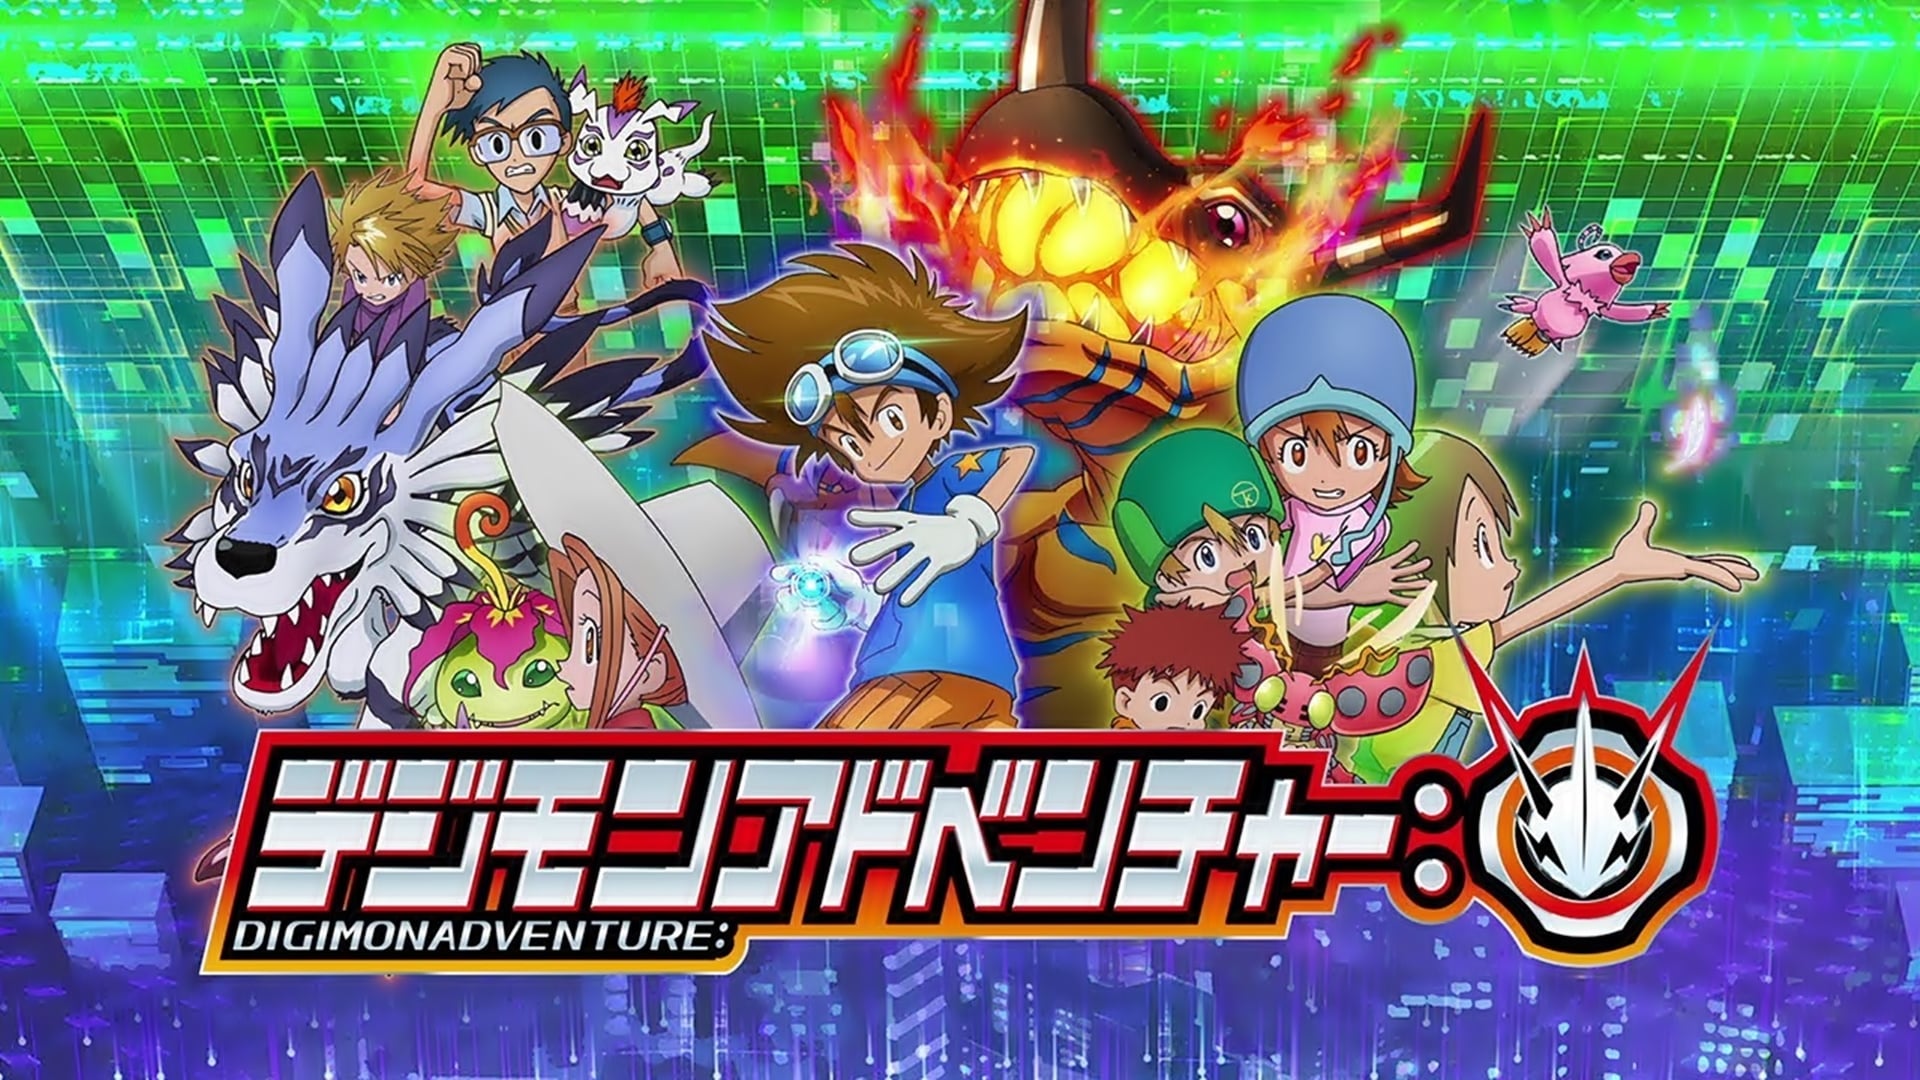 Digimon Day: o impacto de um anime que nunca se esquivou de abordar temas  difíceis e tragédias